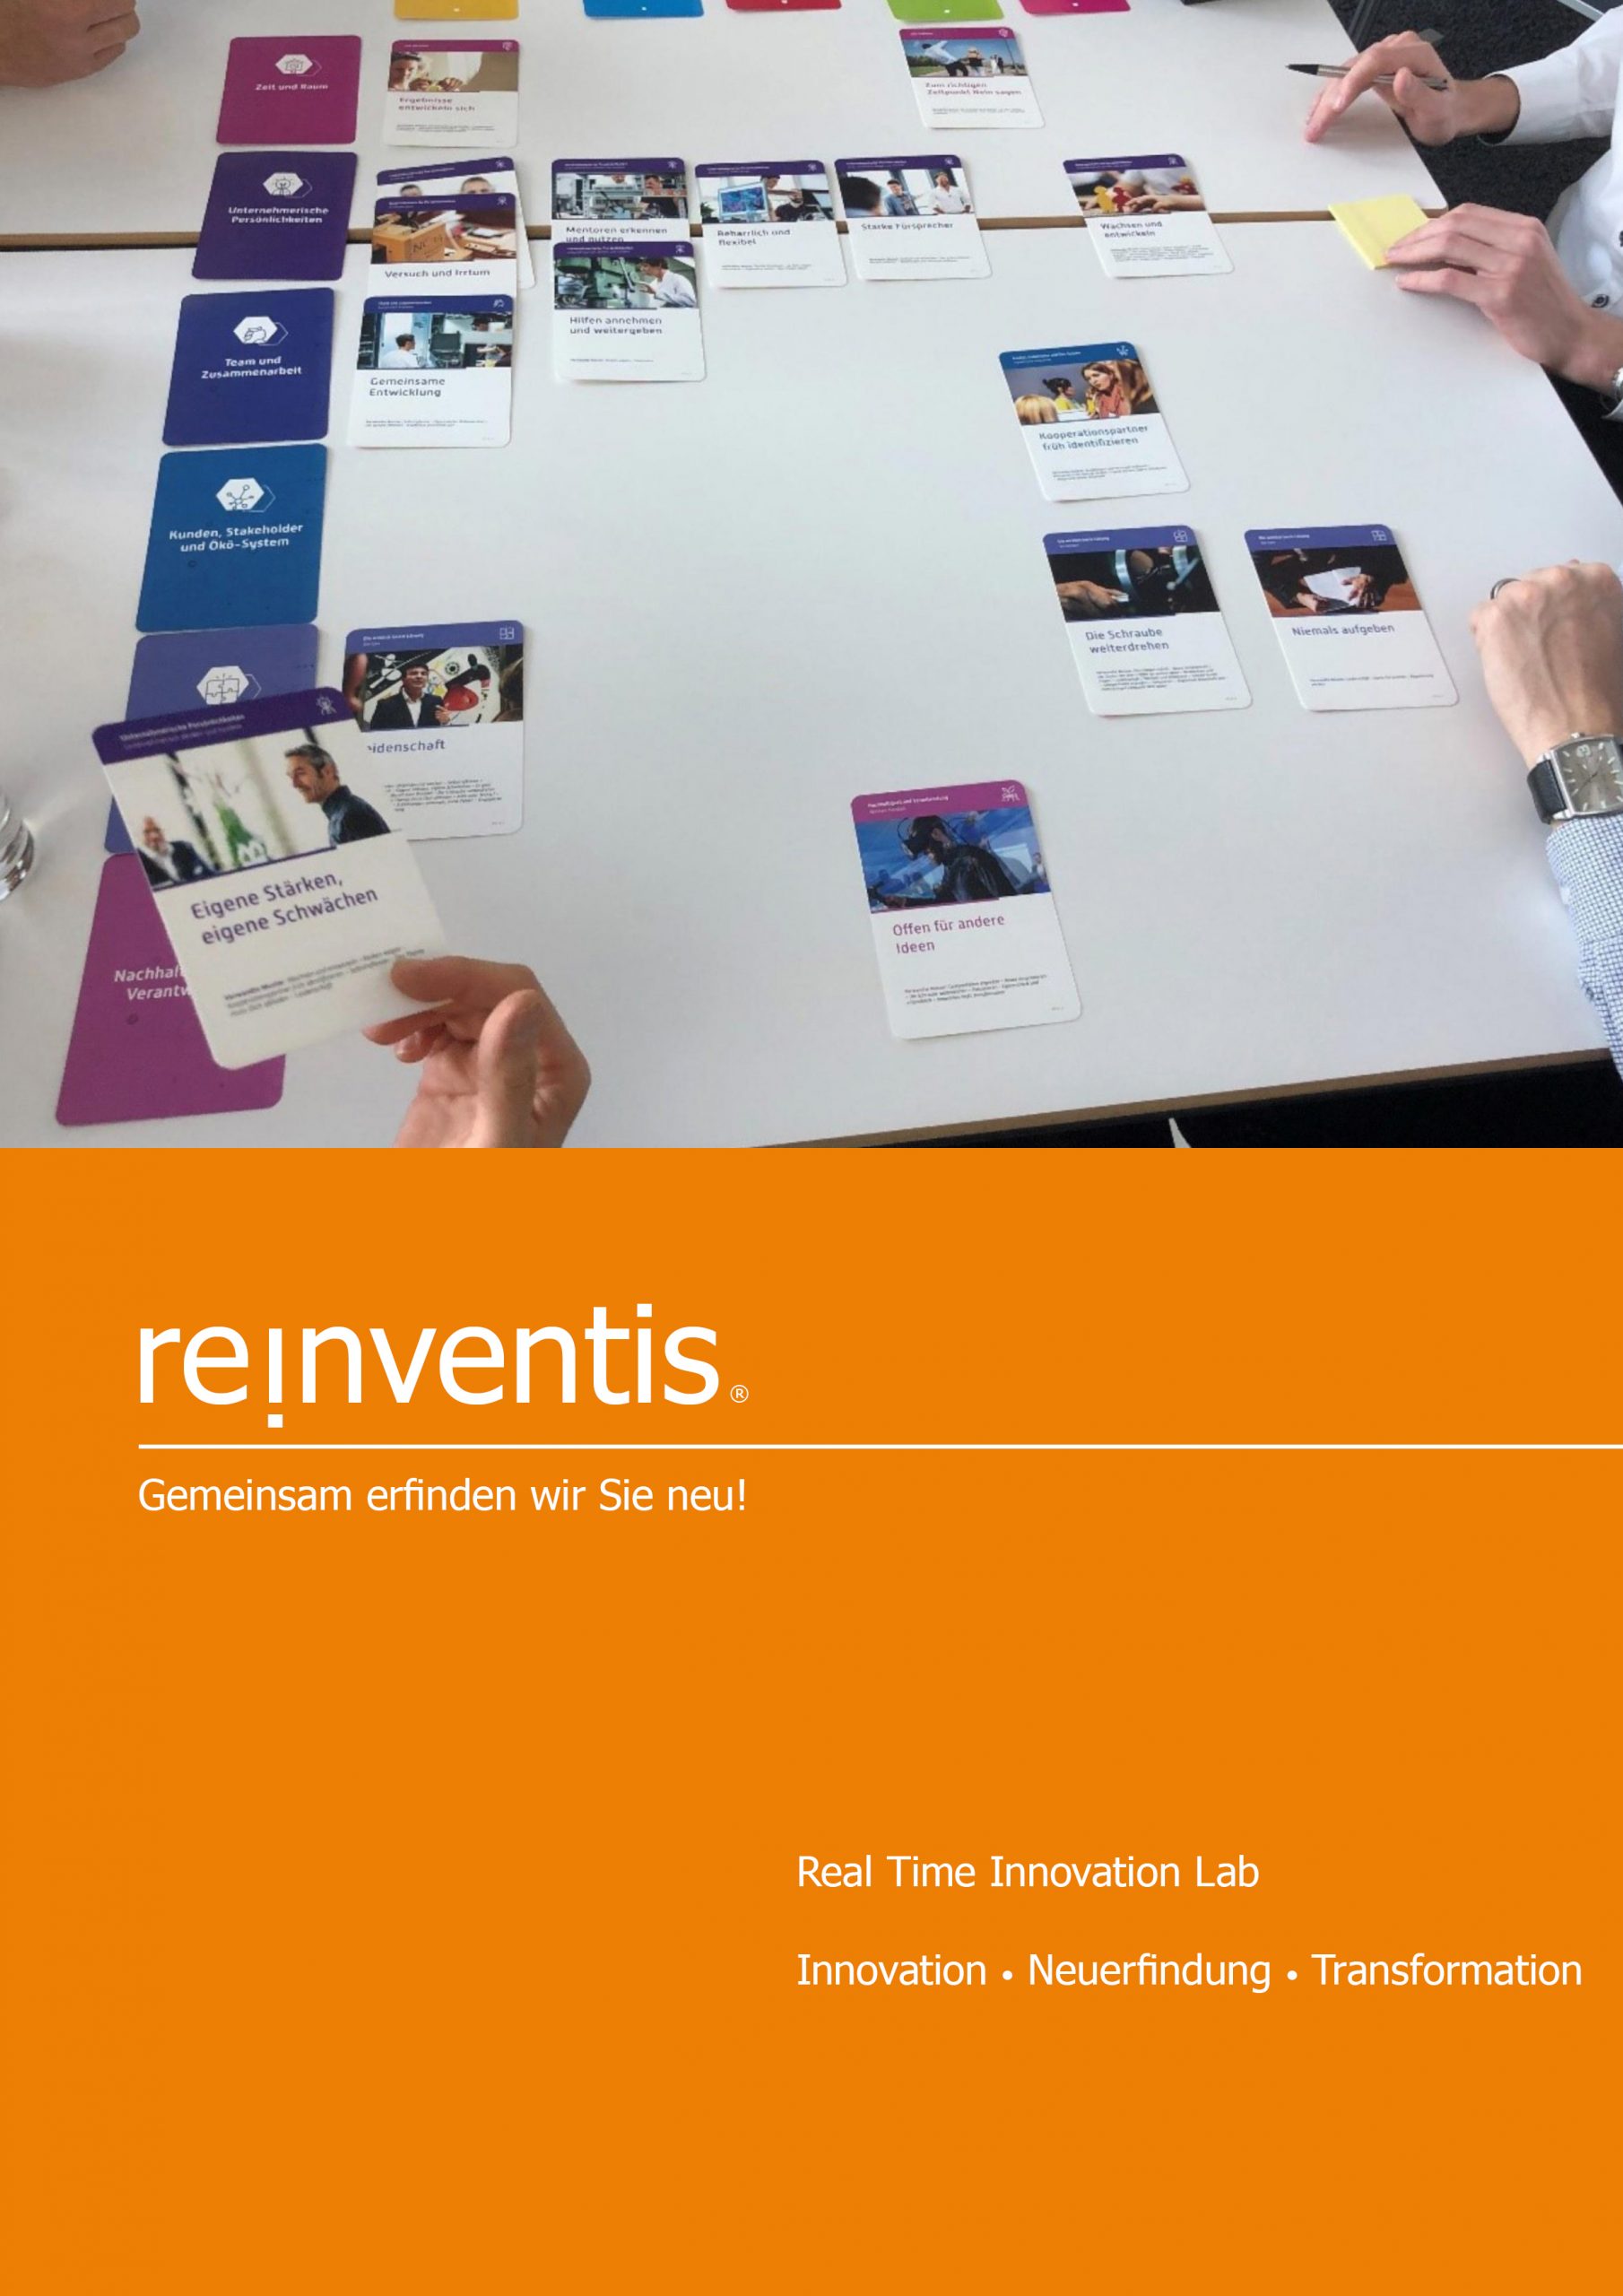 Real Time Innovation - Innovation, Reinvention und Transformation - REINVENTIS - München